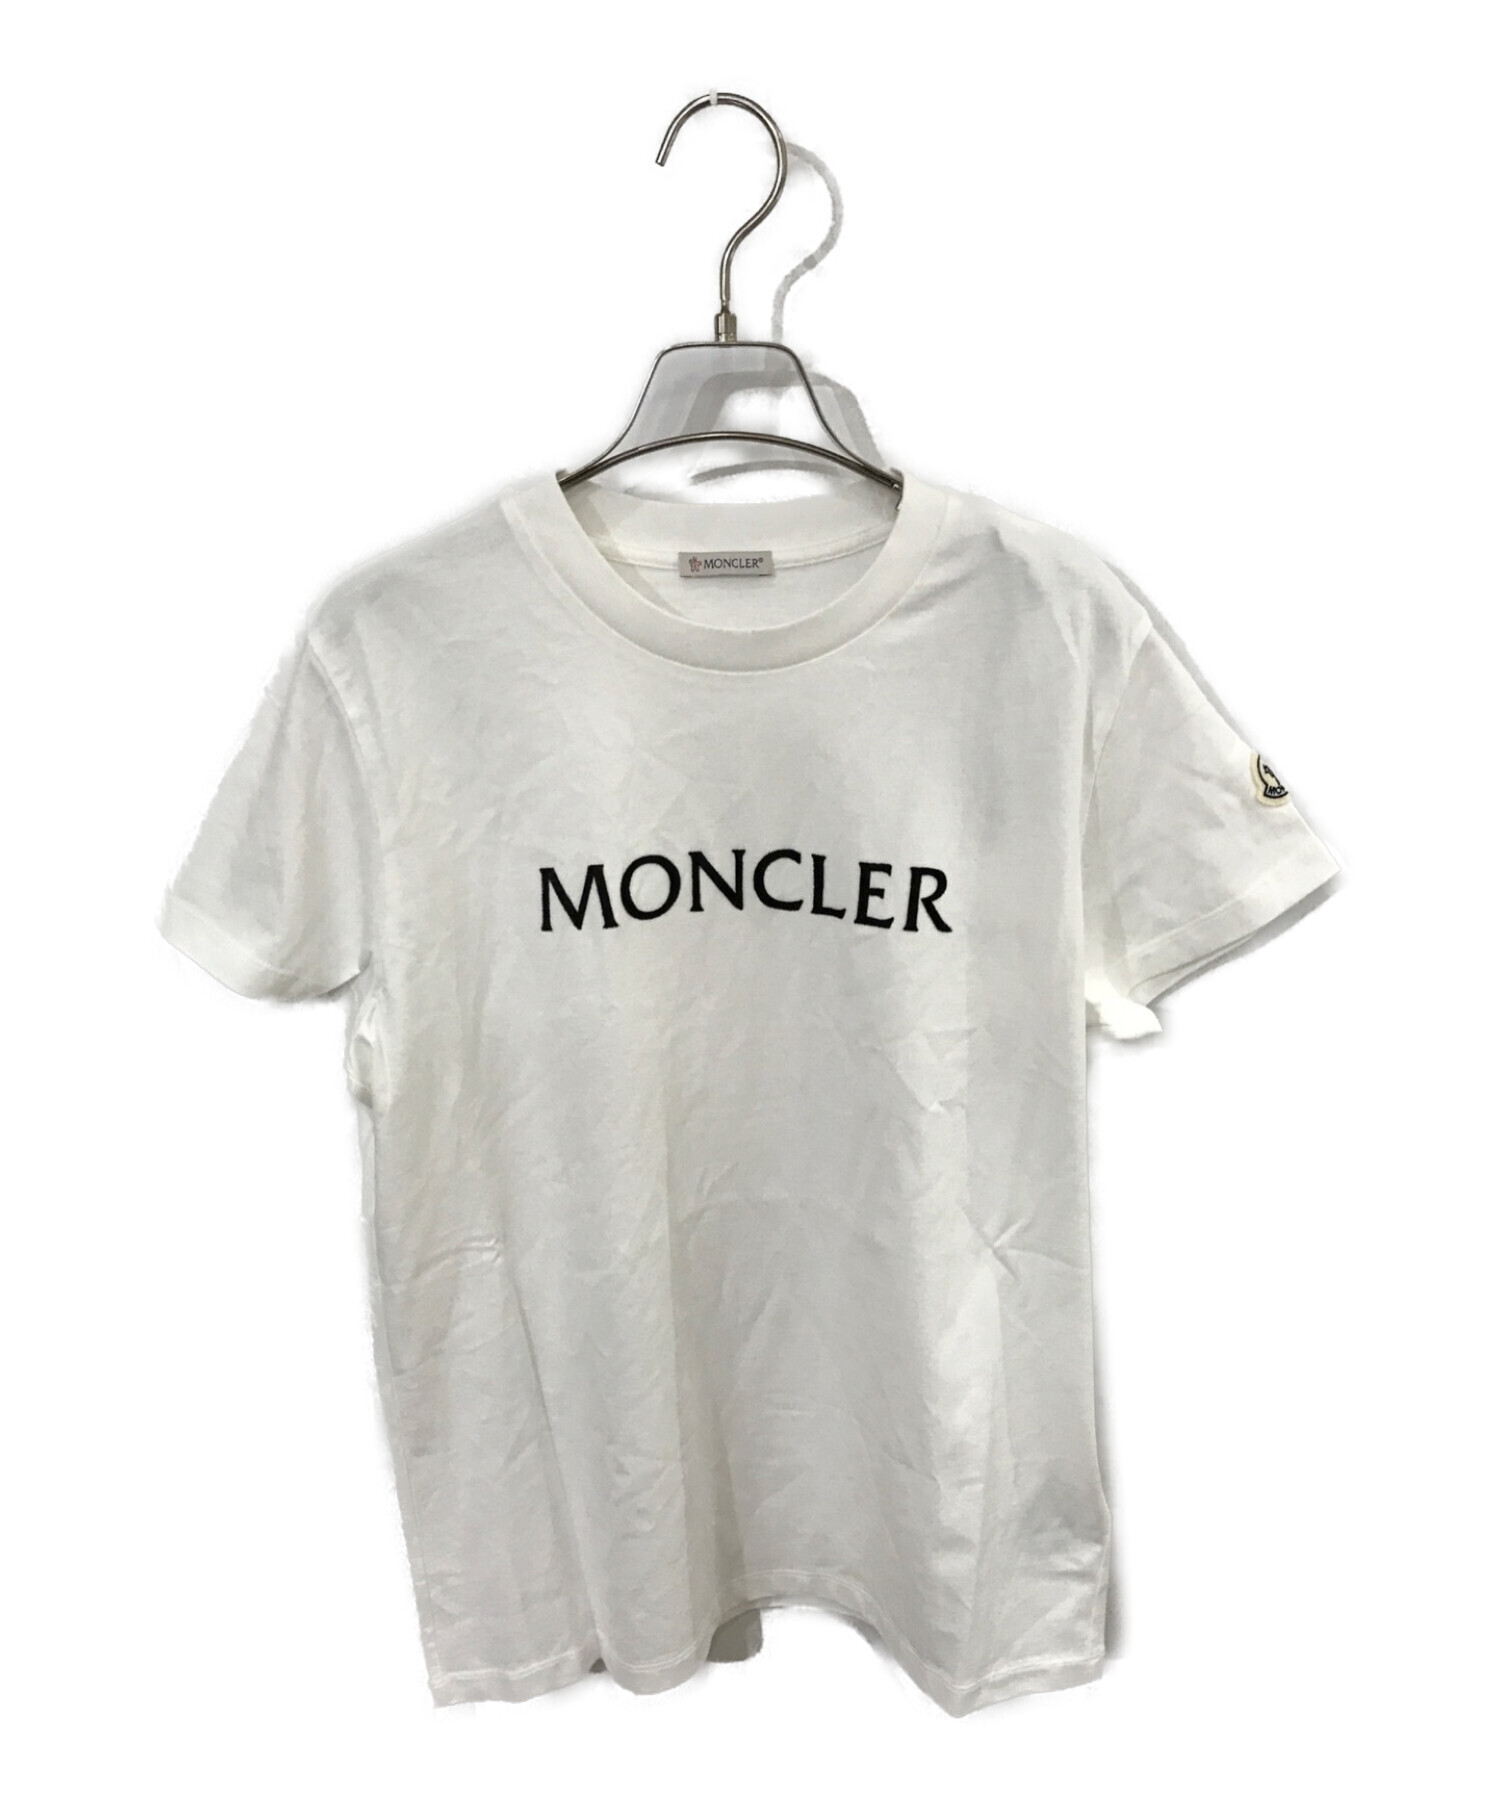 メンズMONCLER Tシャツ ホワイト Mサイズ